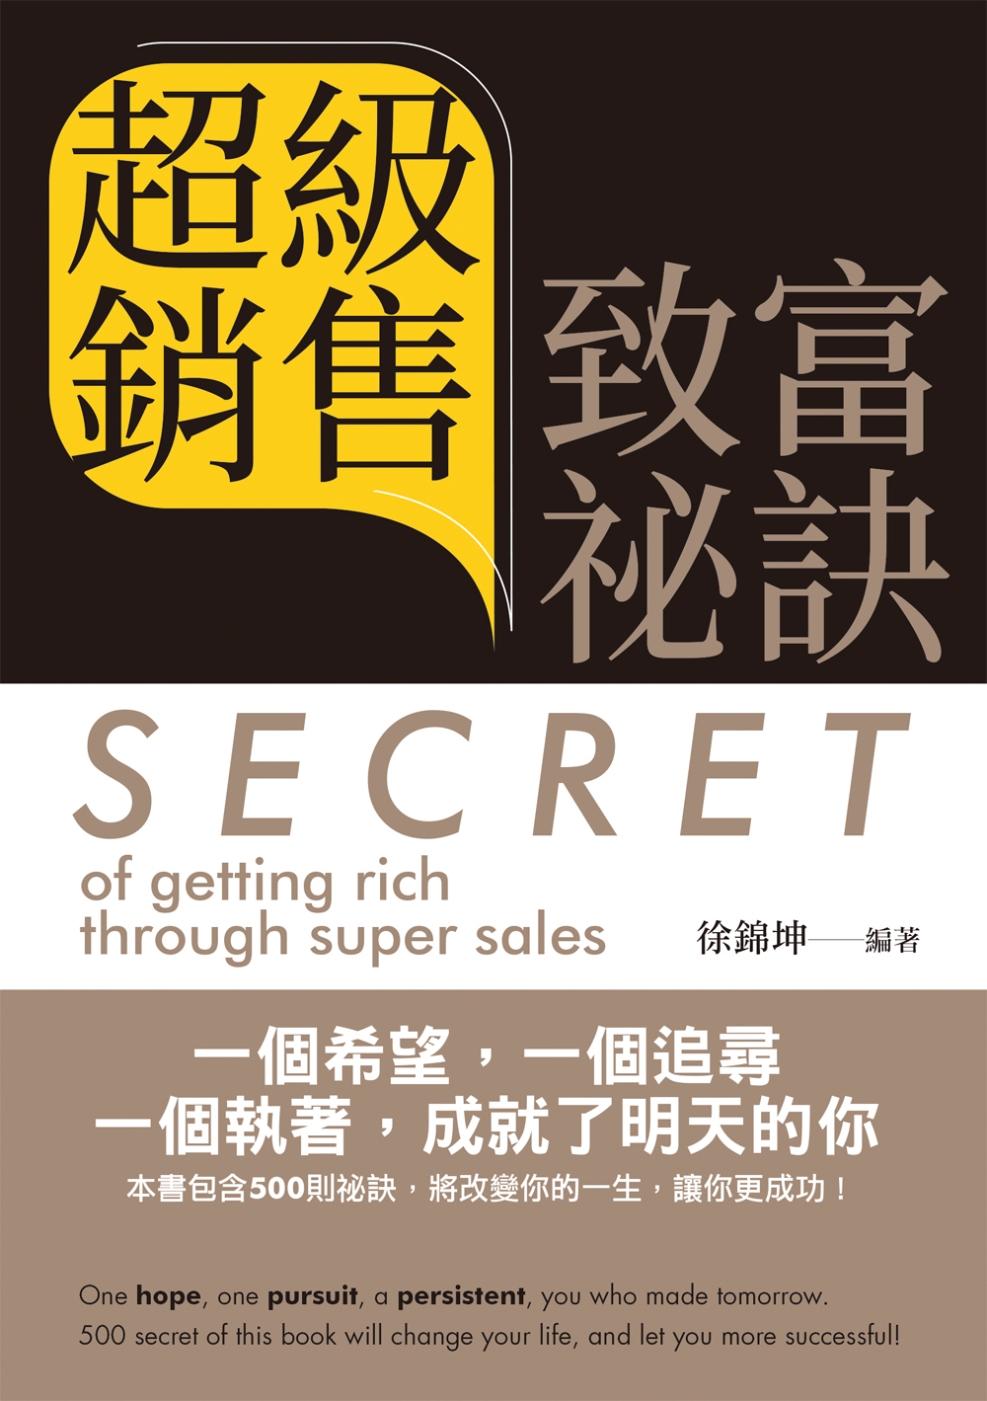 超級銷售致富祕訣 = Secret of getting rich through super sales(中英文版)